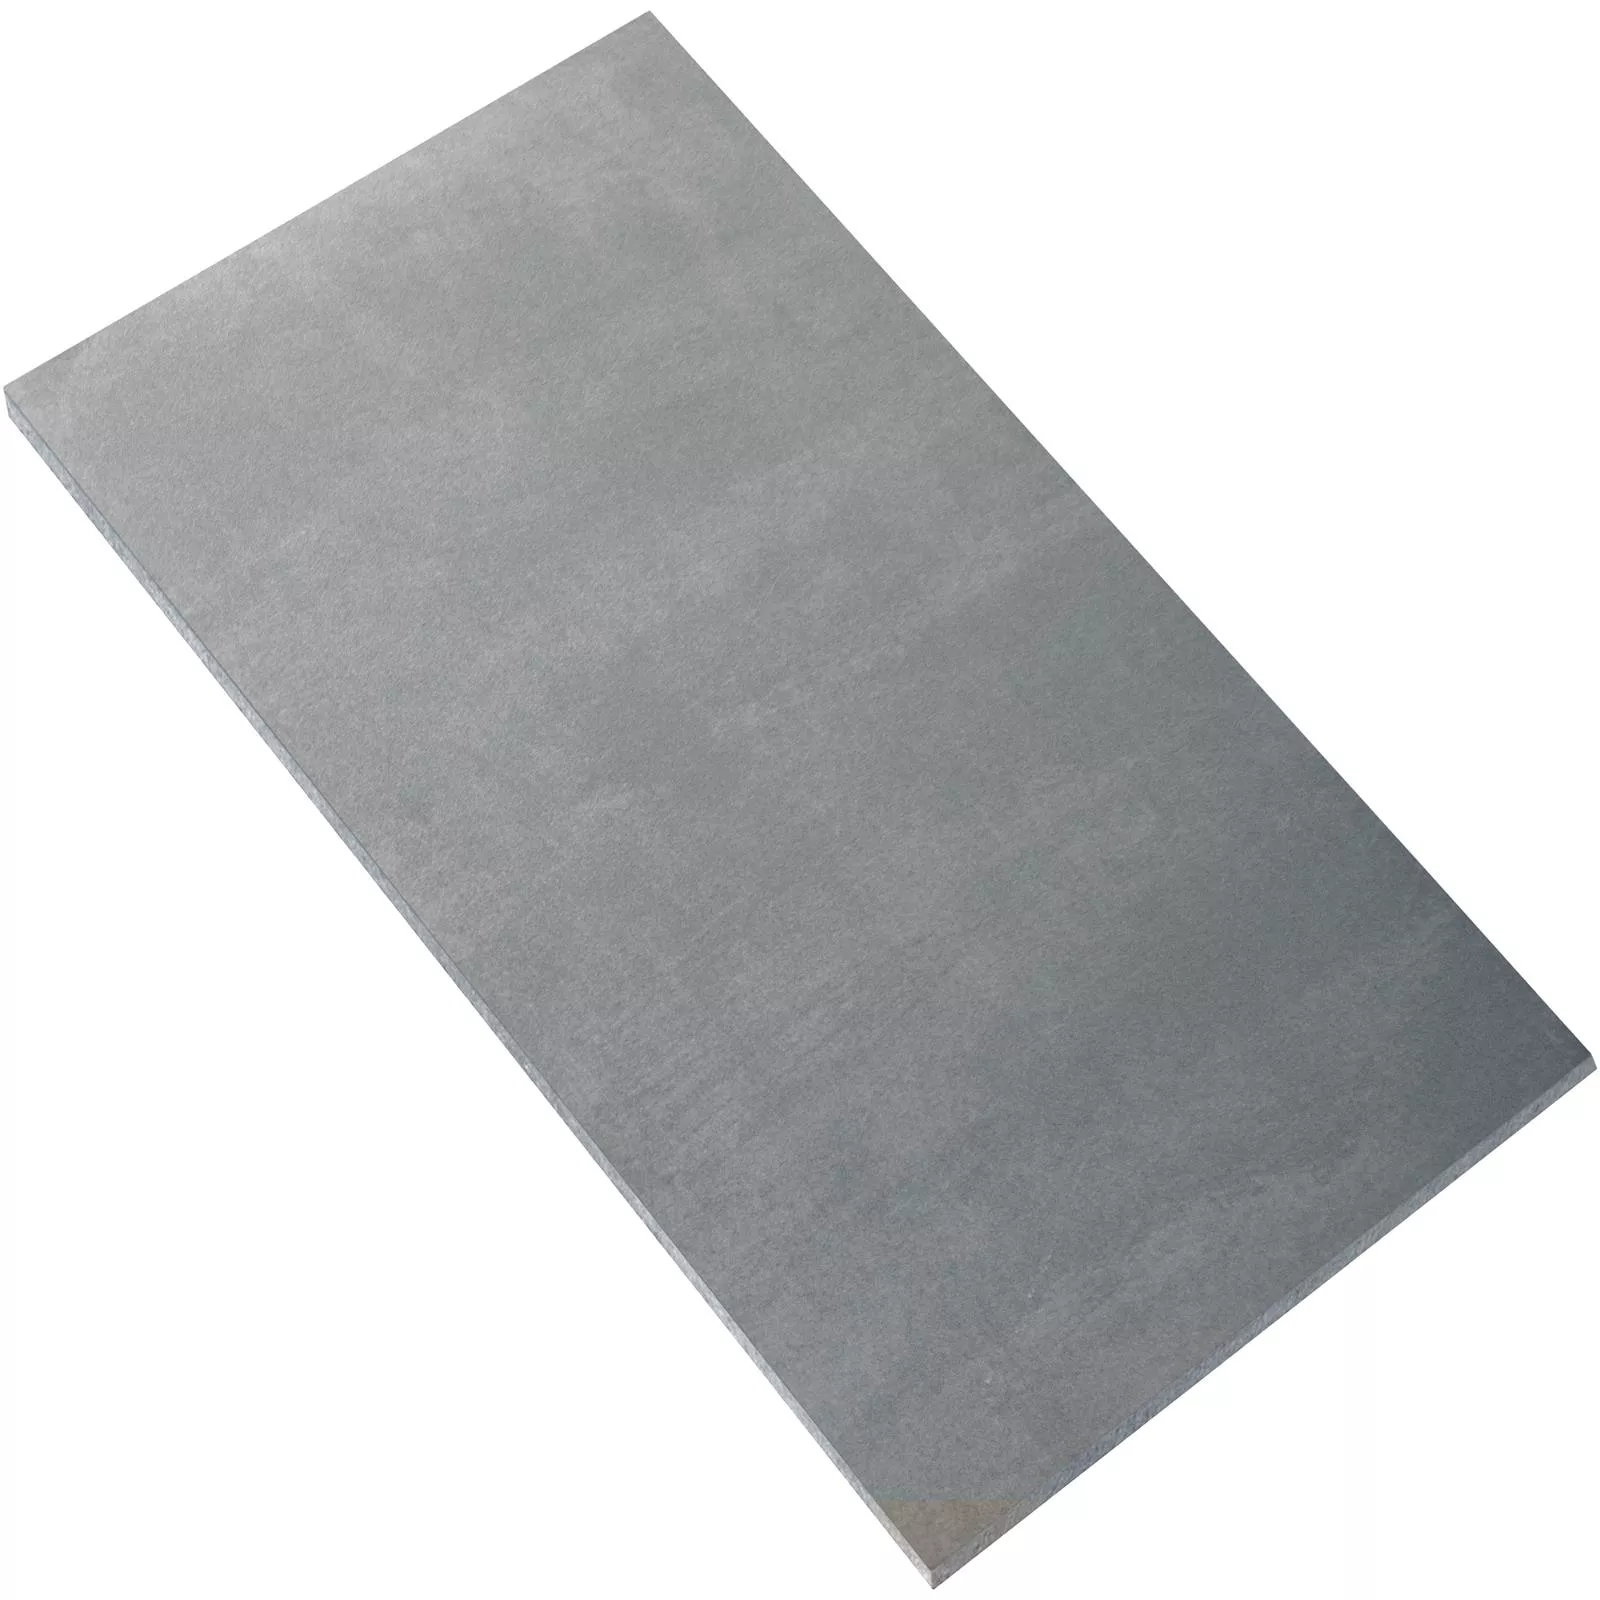 Sample Floor Tiles Beton Optic Noorvik Light Grey 60x120cm